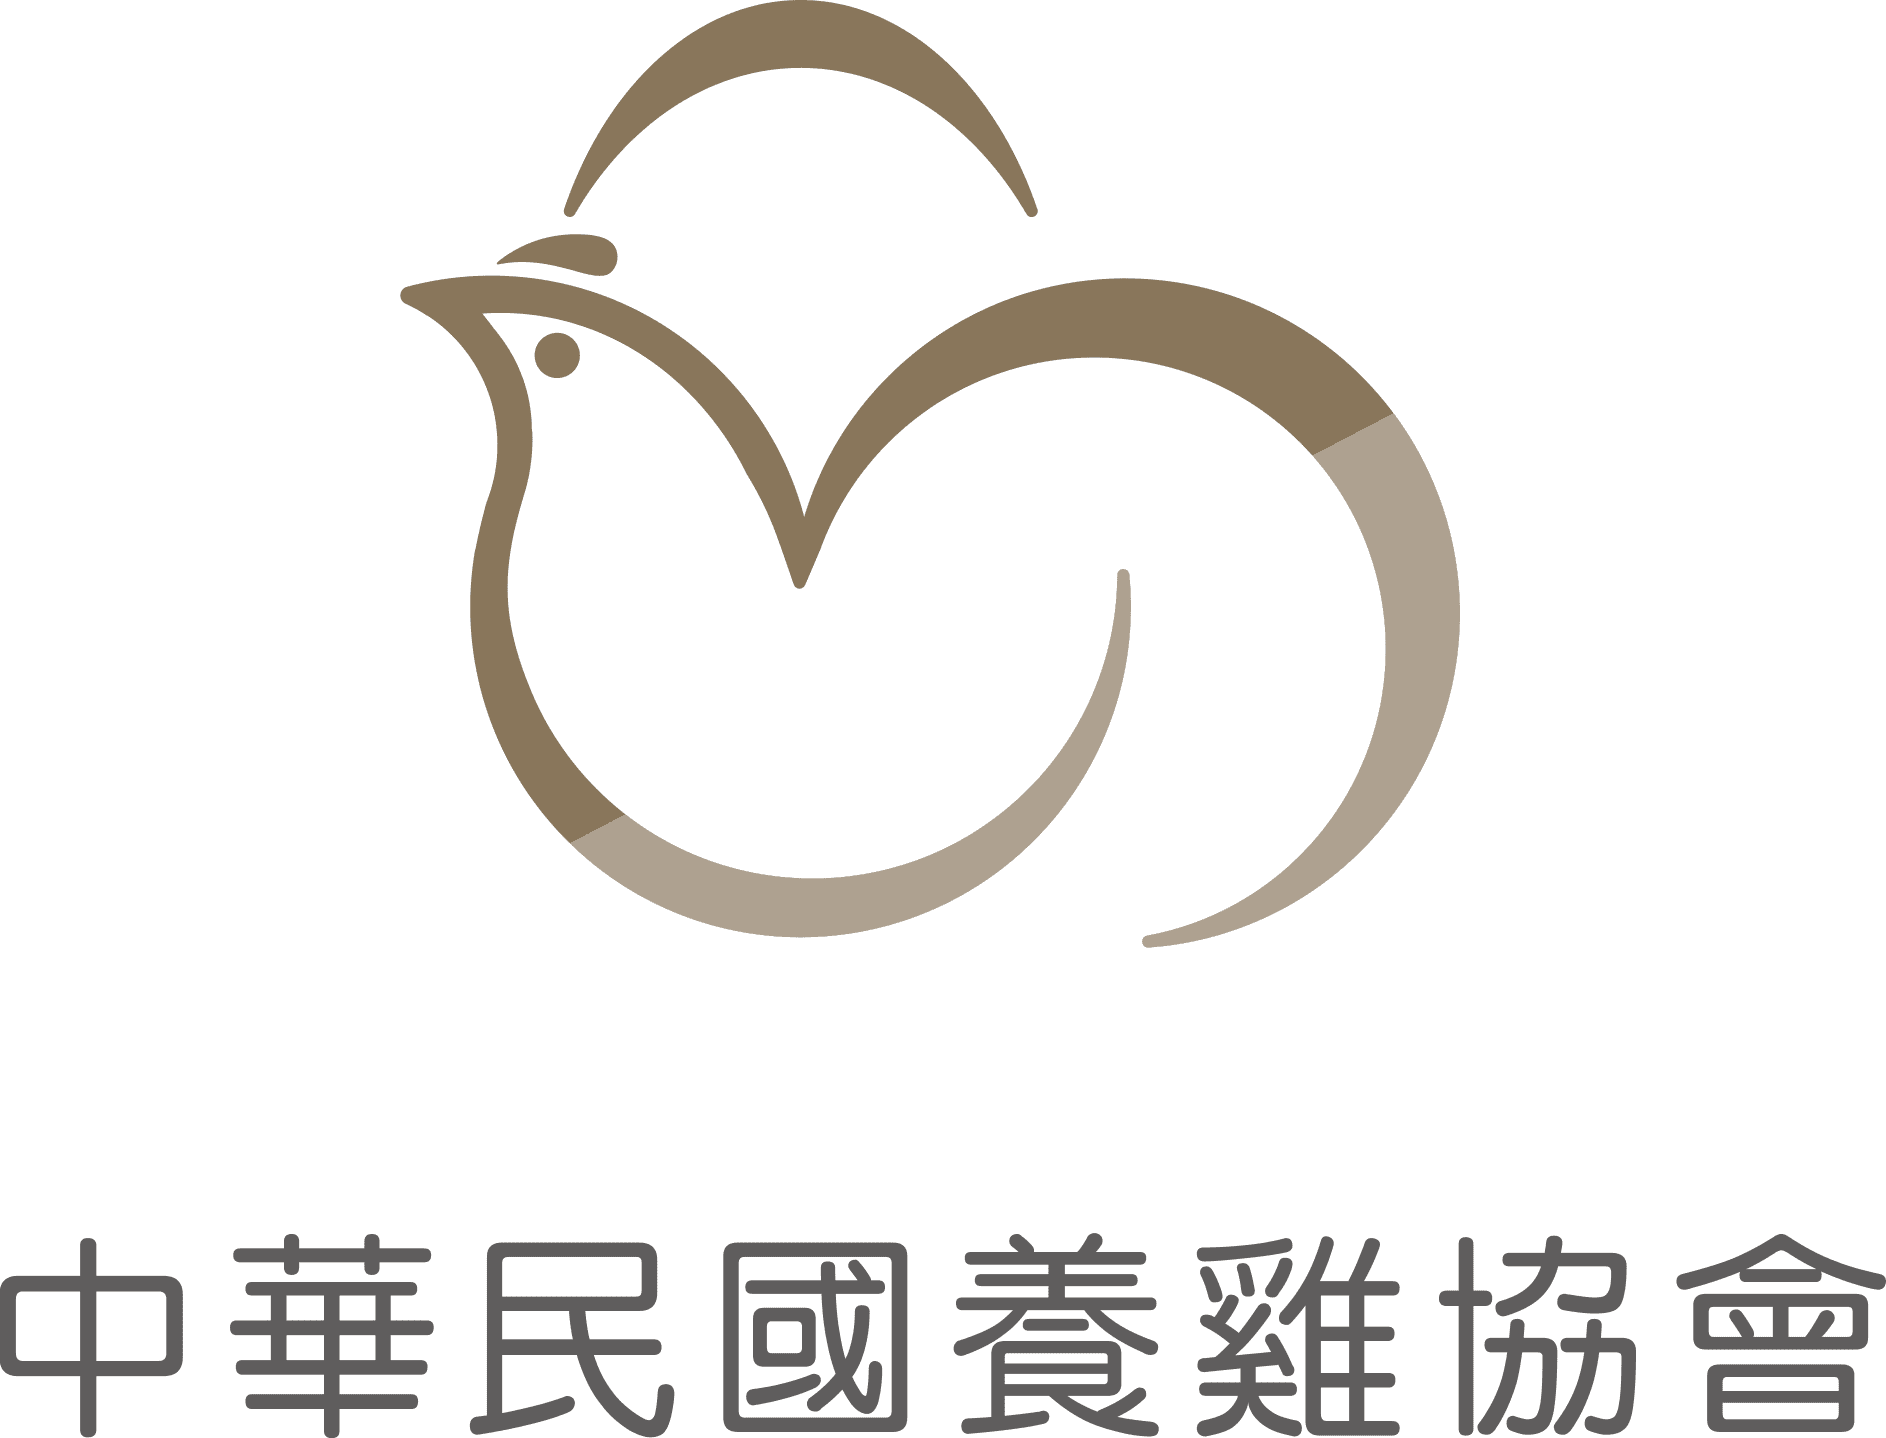 中華民國養雞協會